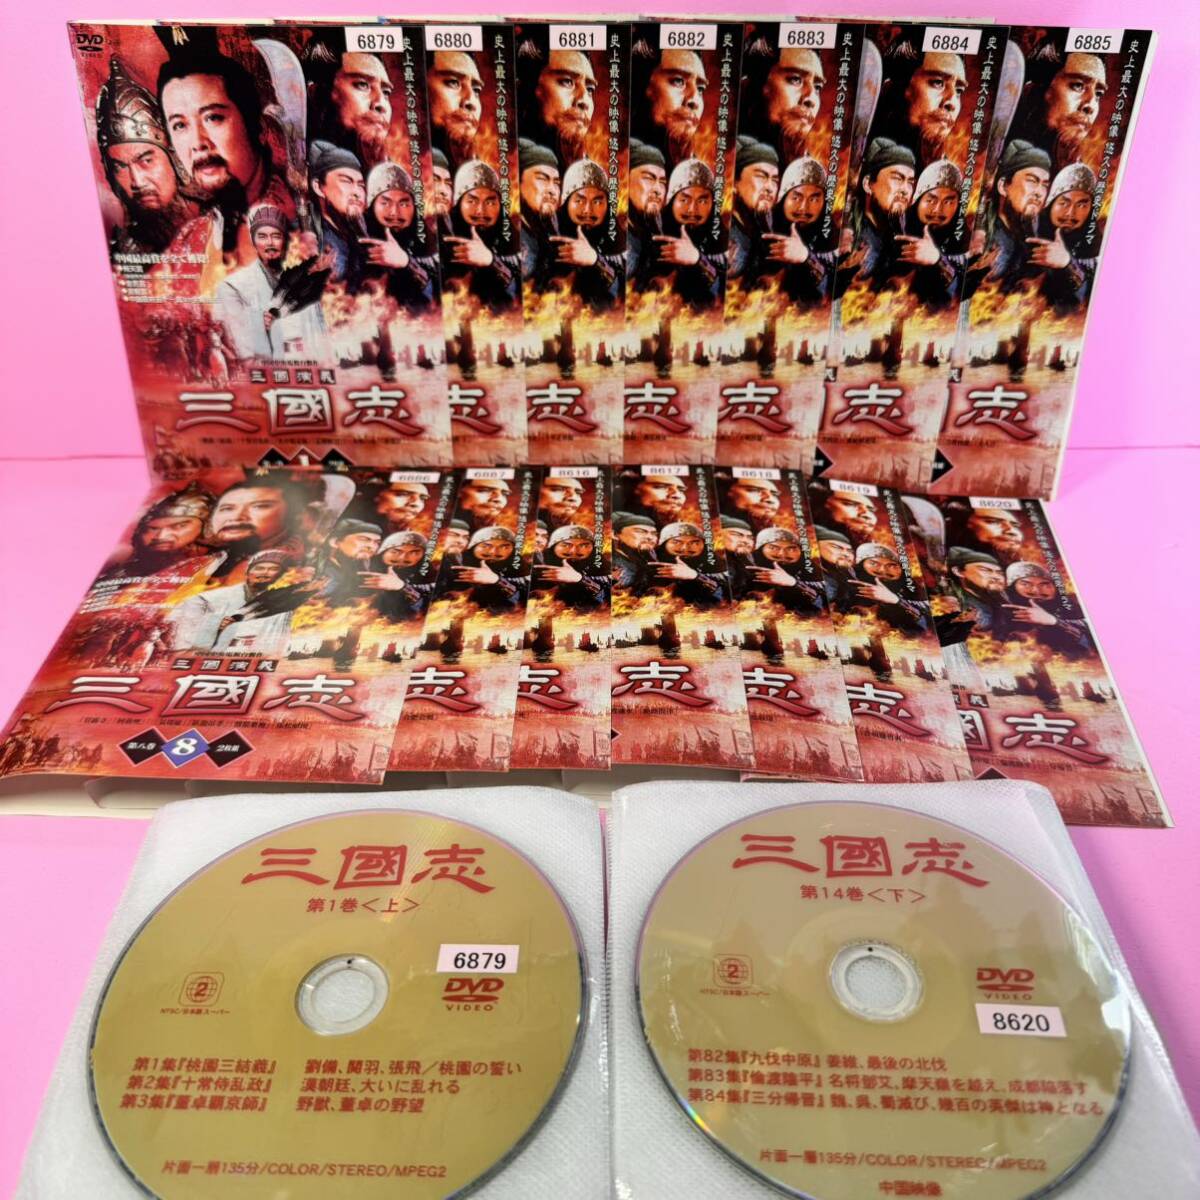 三國志 三国演義 DVD 全14巻 上下巻 合計28巻 全巻セット